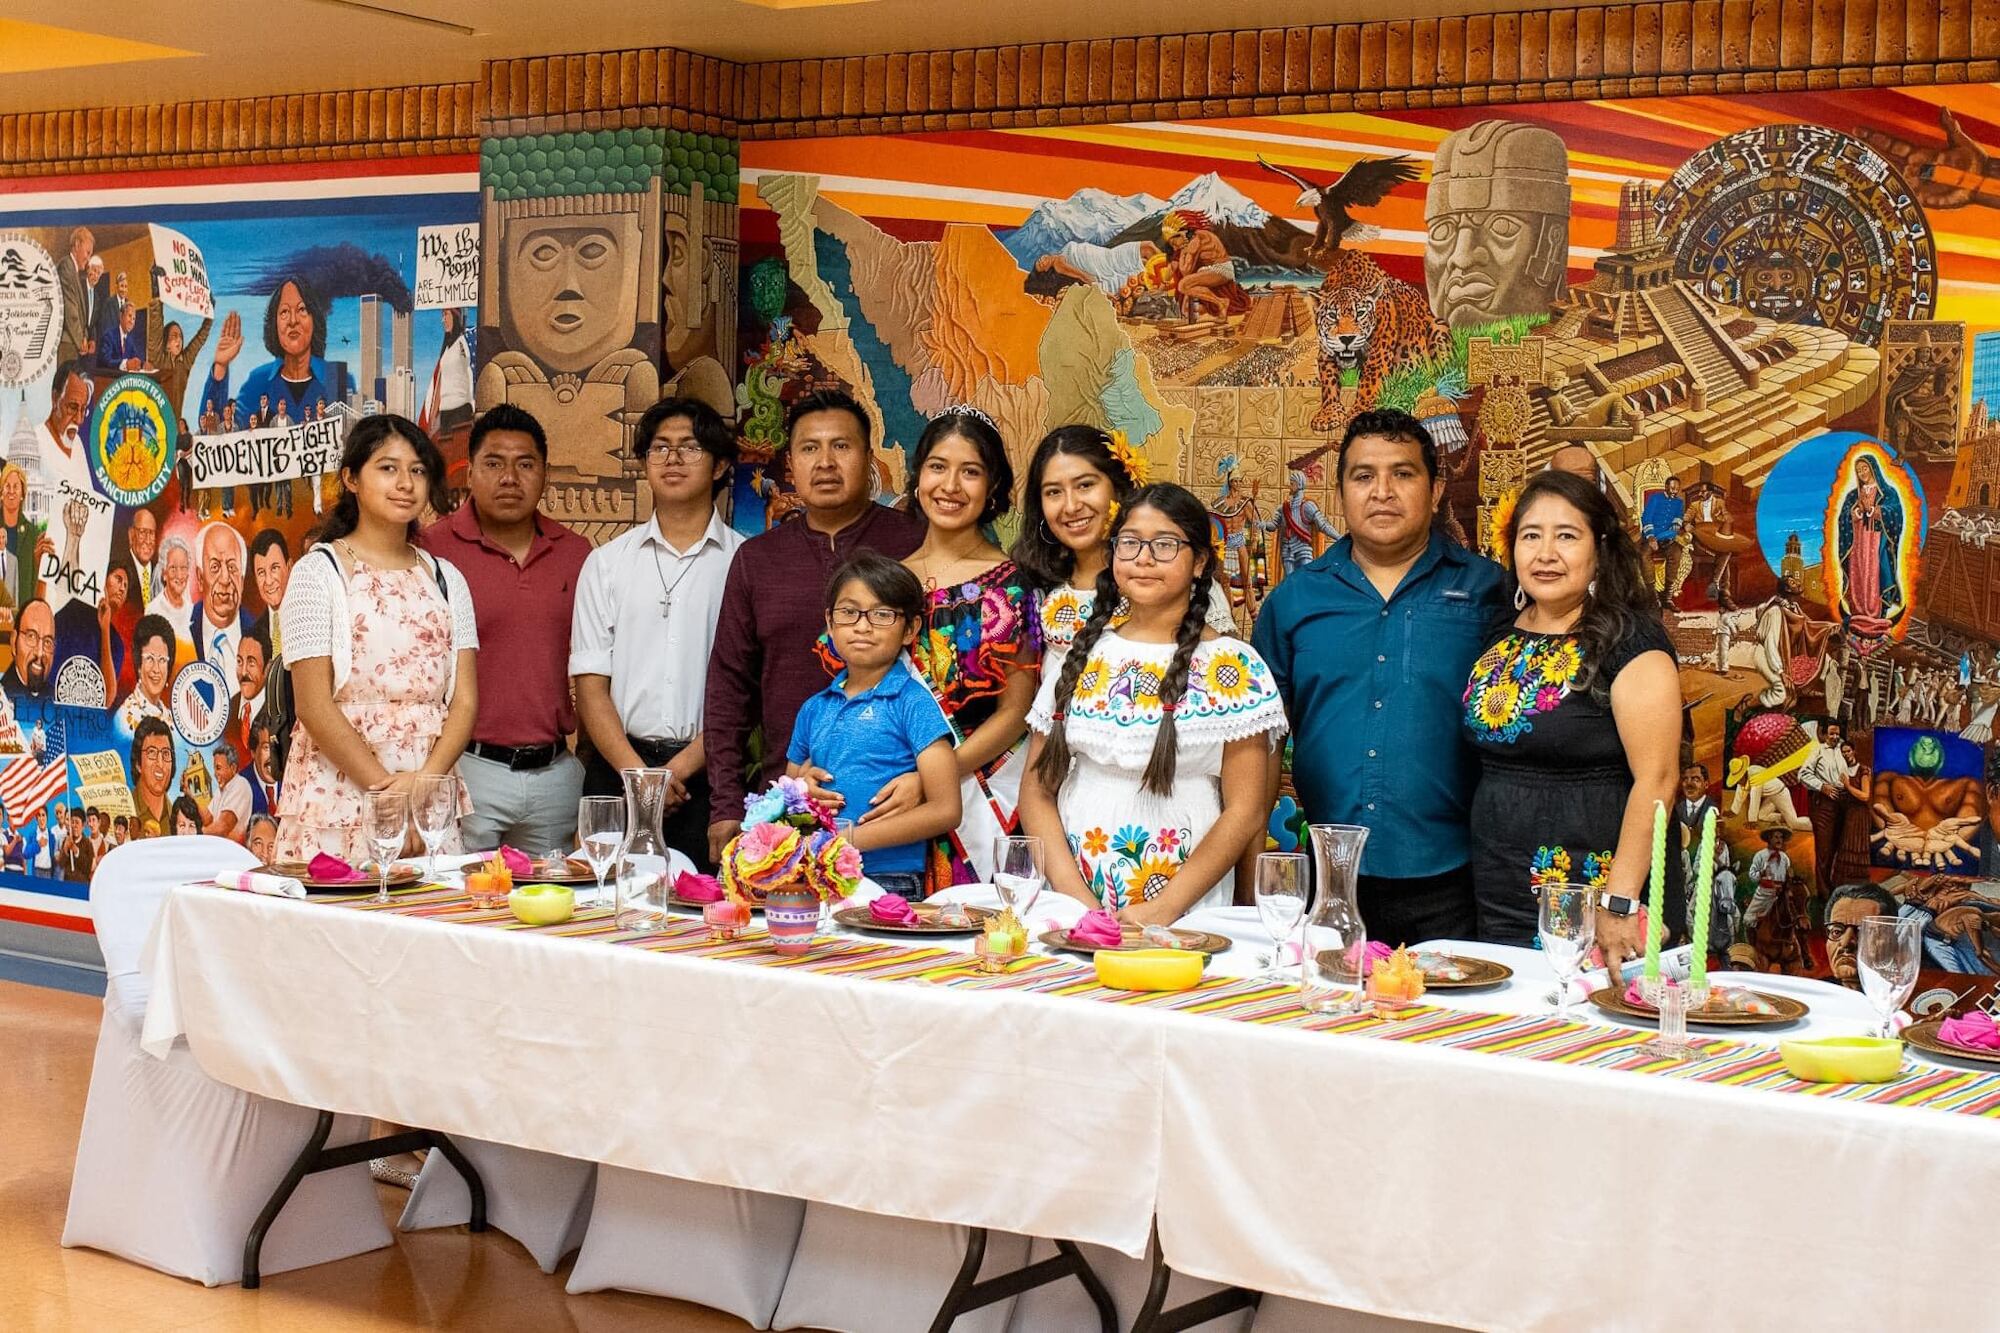 La comunidad de migrantes mexicanos organiza festivales anuales en el vecindario de Oakland